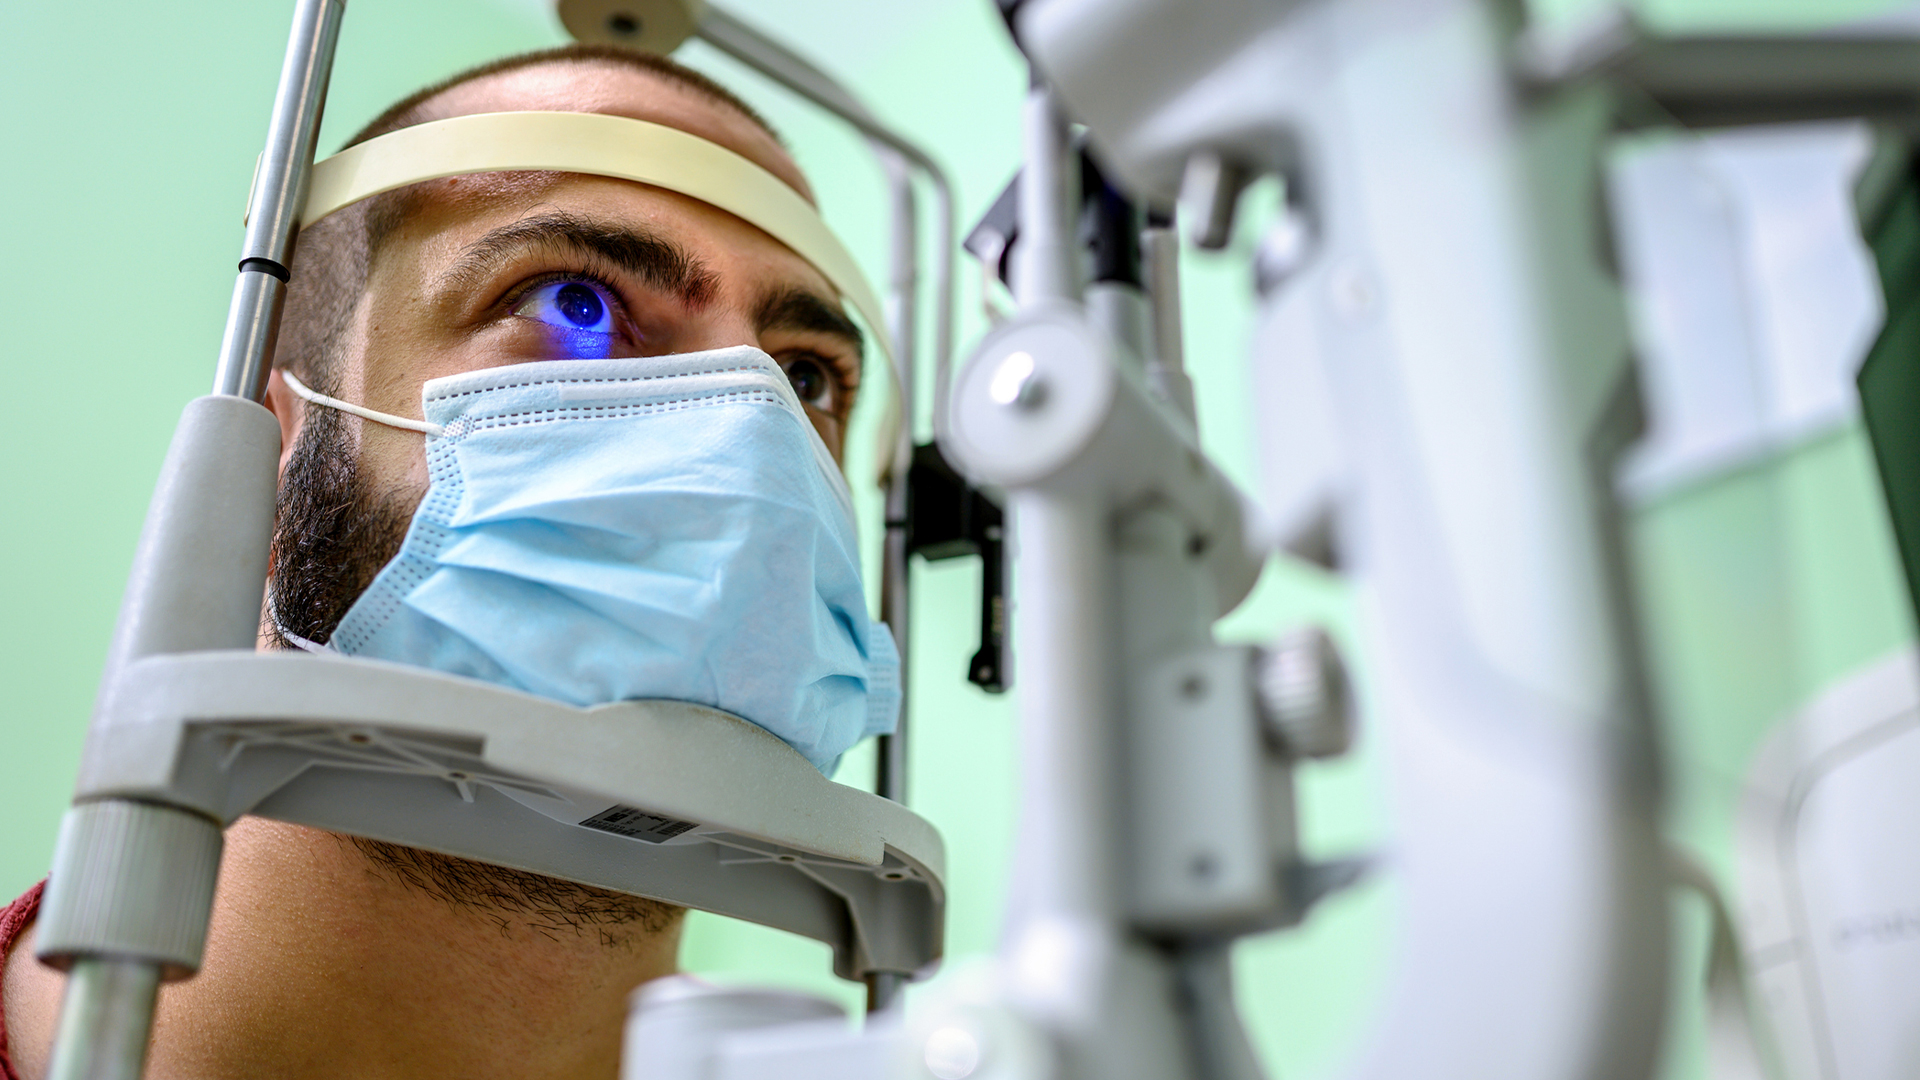 Este descubrimiento podría permitir que los médicos con un simple análisis ocular puedan evaluar el nivel de envejecimiento y la salud general de una persona